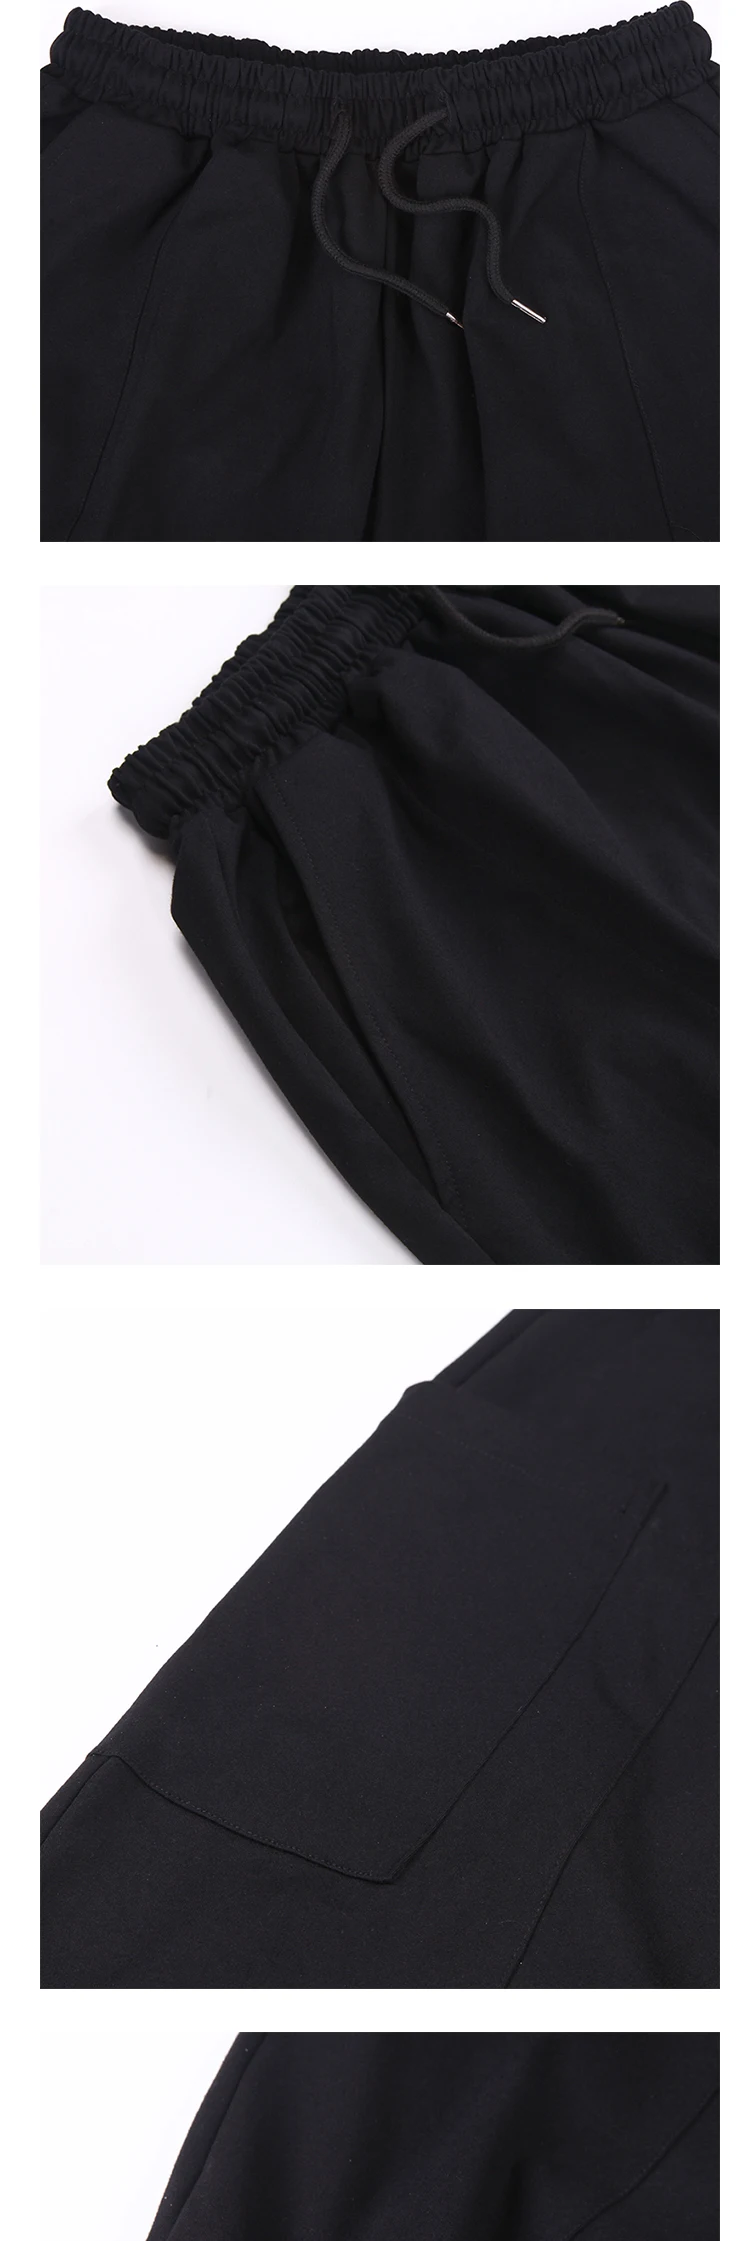 Для мужчин Японии стиль черные Свободные Повседневное Гаремные с низкой проймой брюки Мужской уличная панк готический широкие брюки